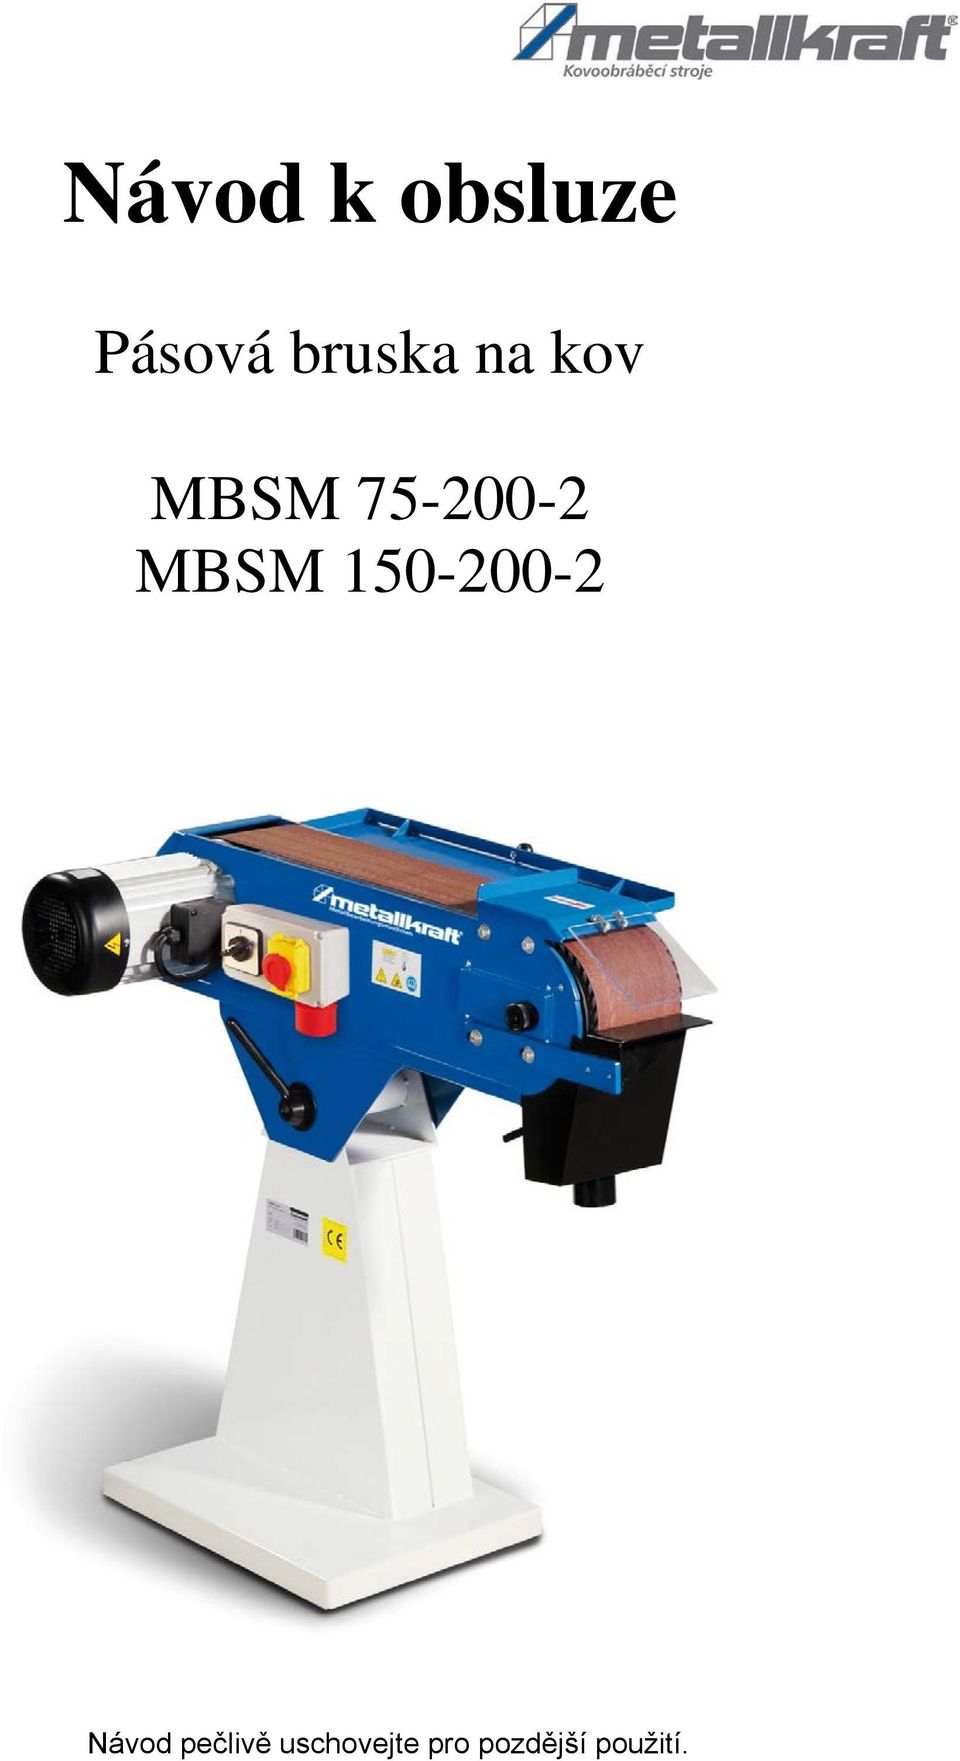 MBSM 150-200-2 Návod